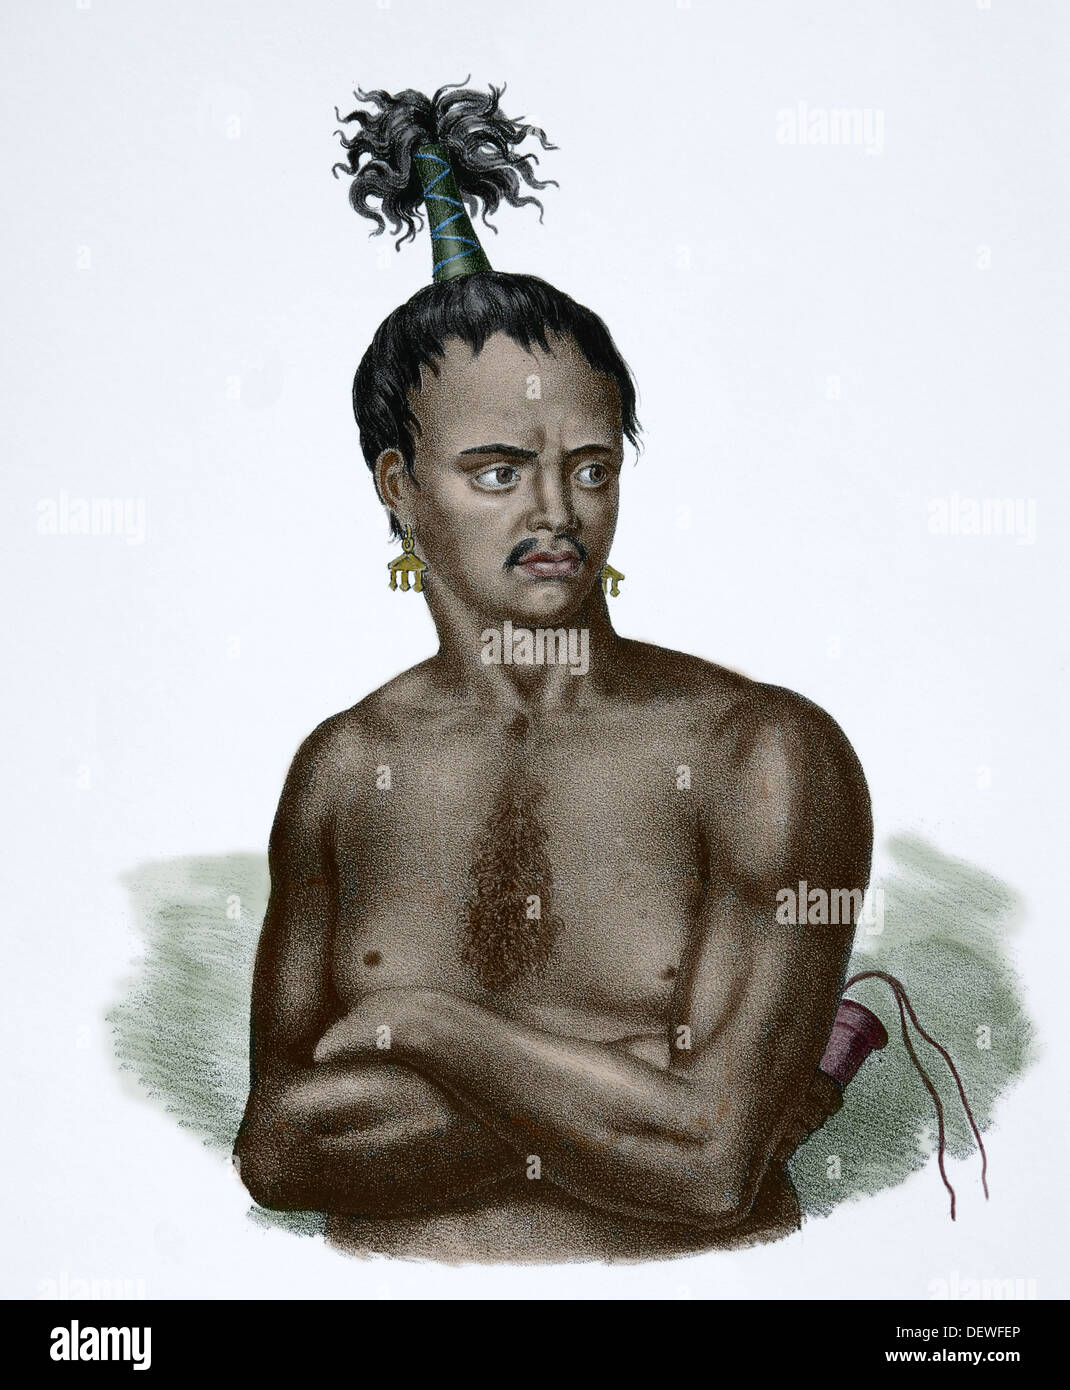 Südost-Asien. Indonesien. Mann aus der kleinen Sunda-Inseln, um 1840. Farbige Gravur. des 19. Jahrhunderts. Stockfoto